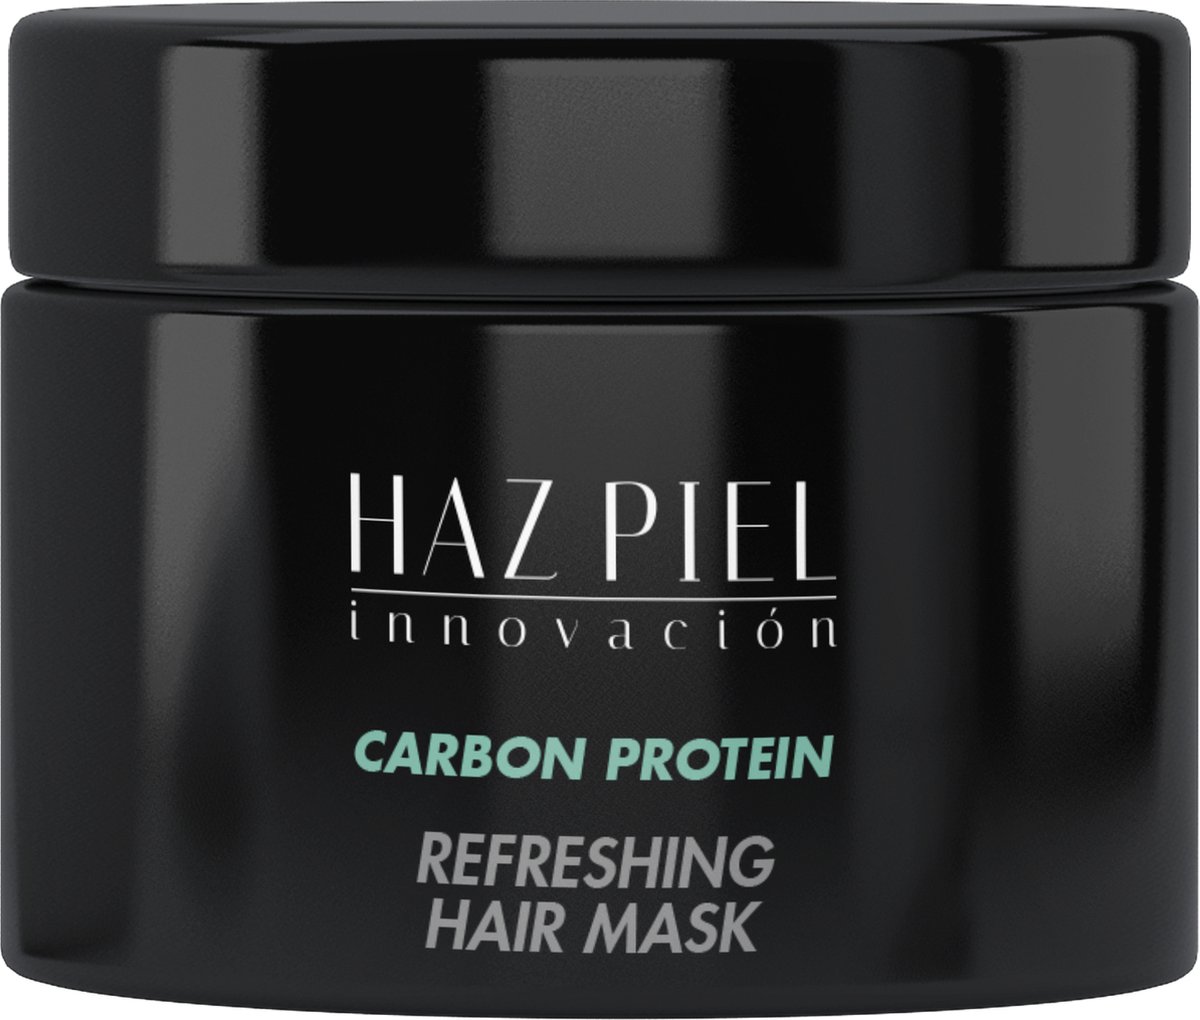 HAZPIEL CARBON PROTEIN REFRESHING HAIR MASK